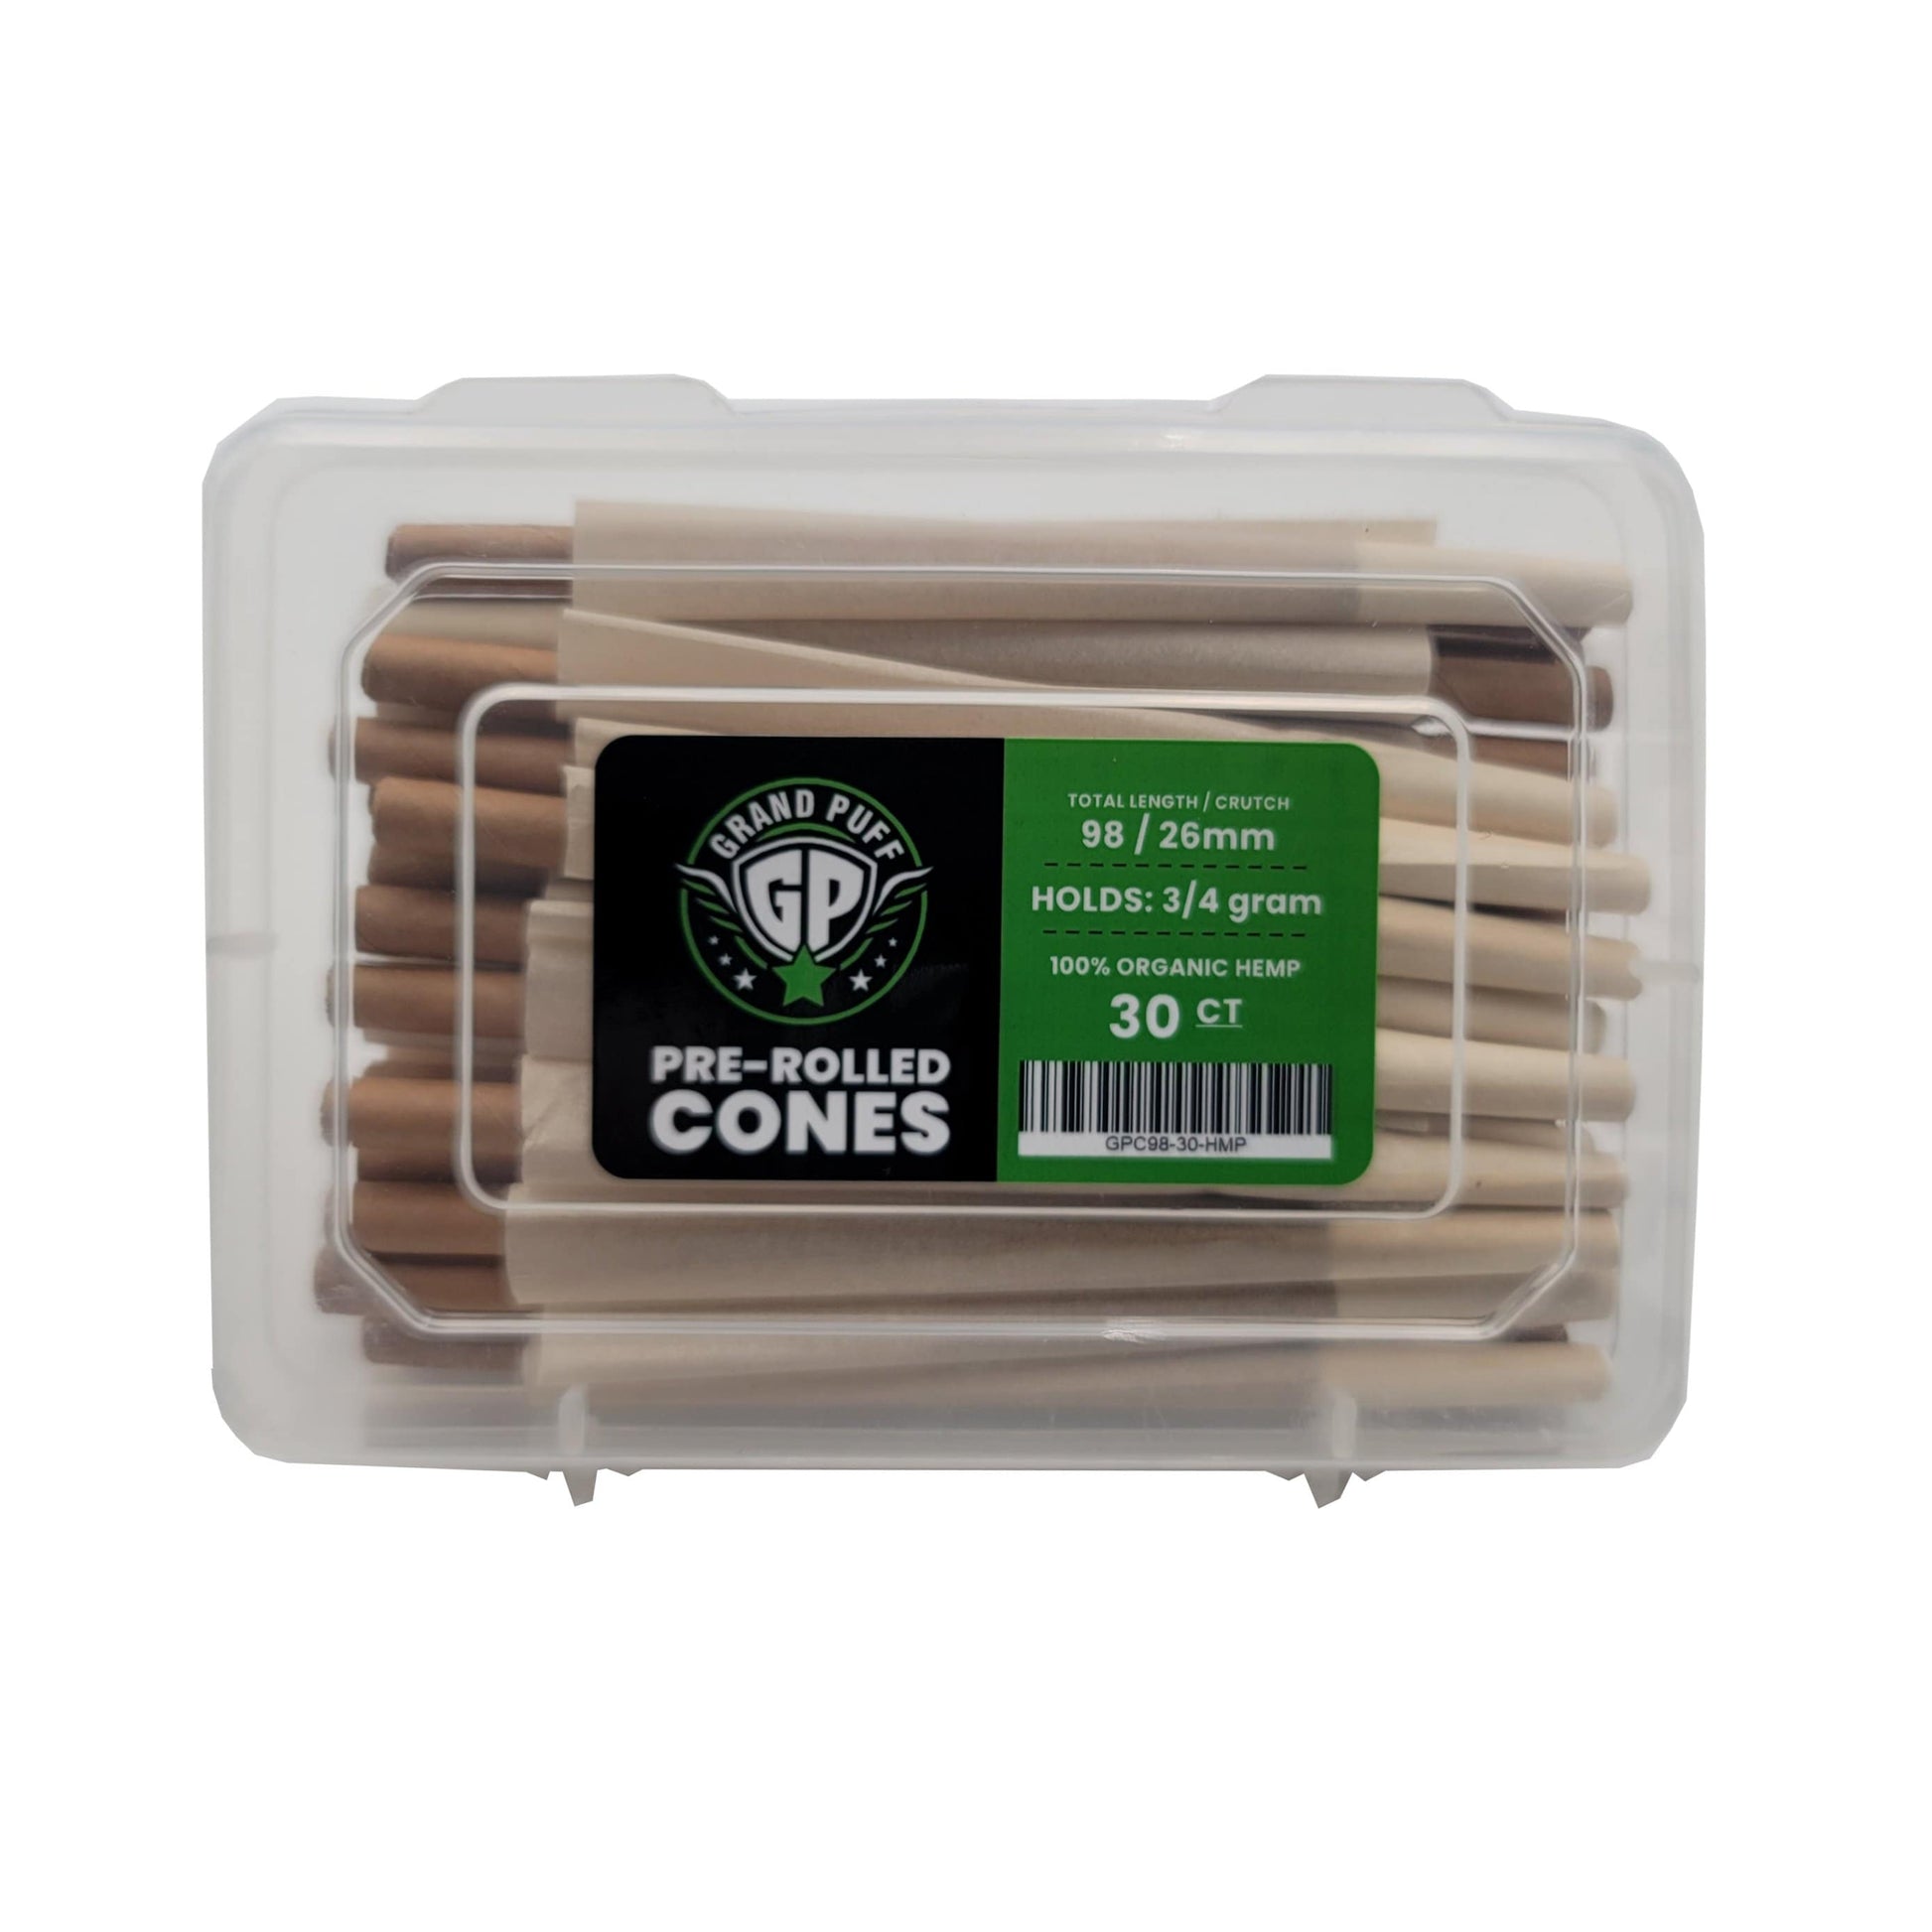 Organic Hemp Grand Puff Premium Classic Pre-Roll Cones (98mm / 26mm filter) | Box of 30